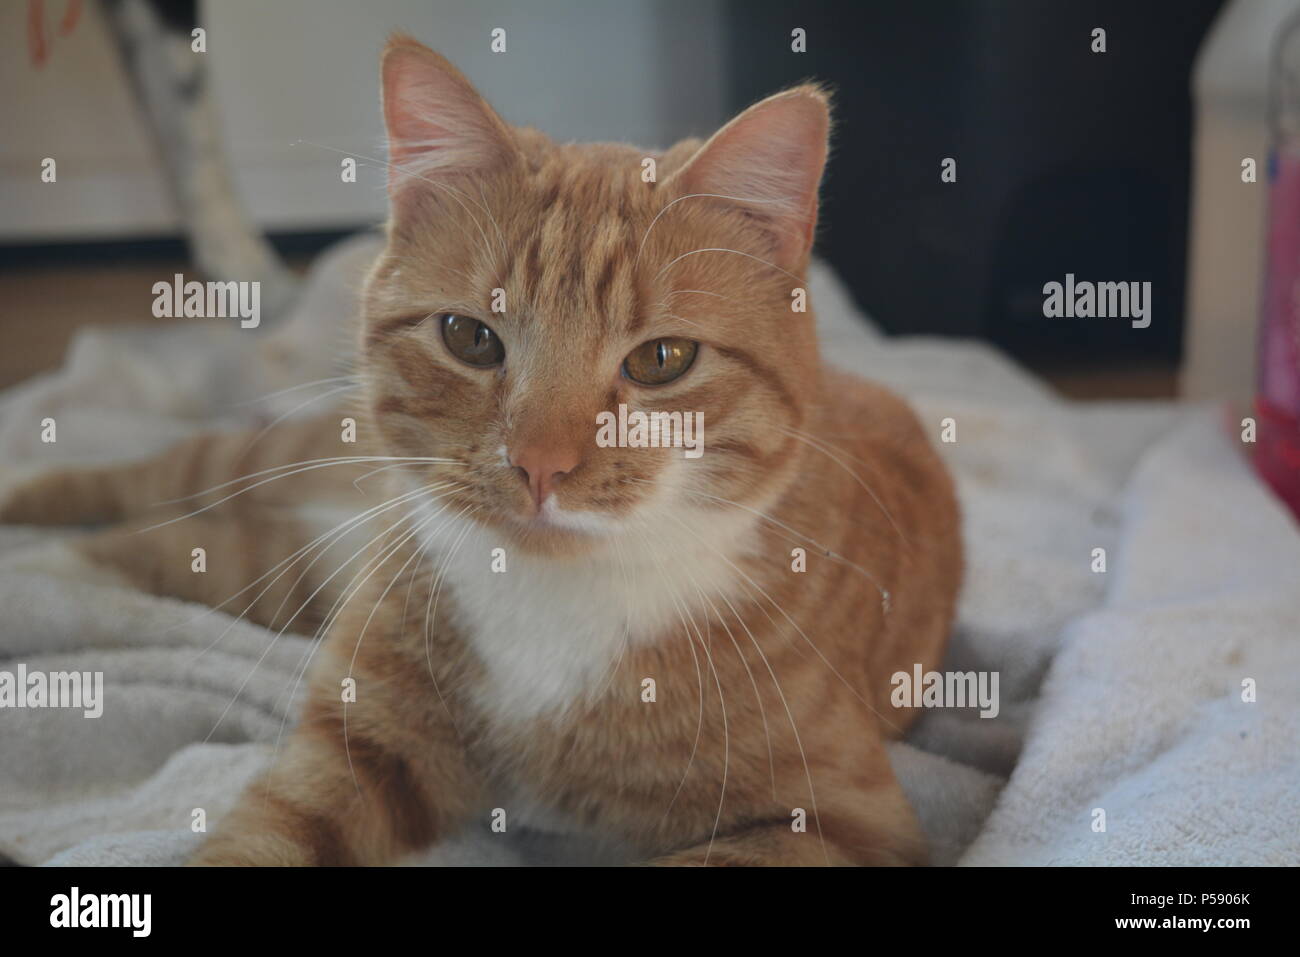 Sleepy macho naranja y blanco gato atigrado recostada sobre una toalla Foto de stock